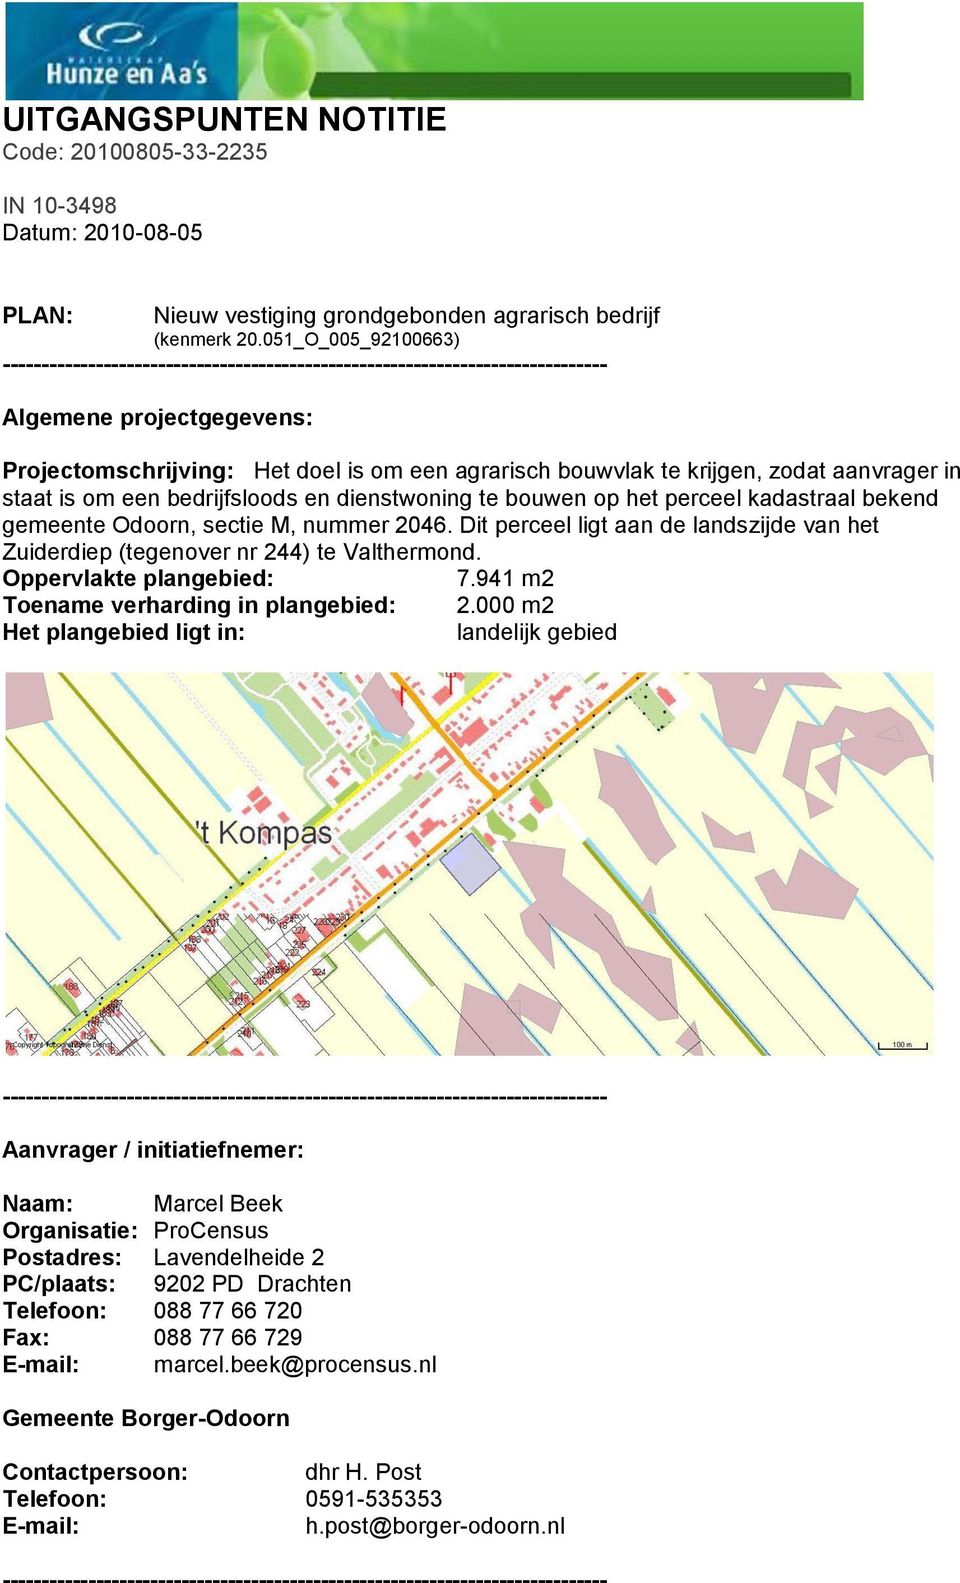 perceel kadastraal bekend gemeente Odoorn, sectie M, nummer 2046. Dit perceel ligt aan de landszijde van het Zuiderdiep (tegenover nr 244) te Valthermond. Oppervlakte plangebied: 7.